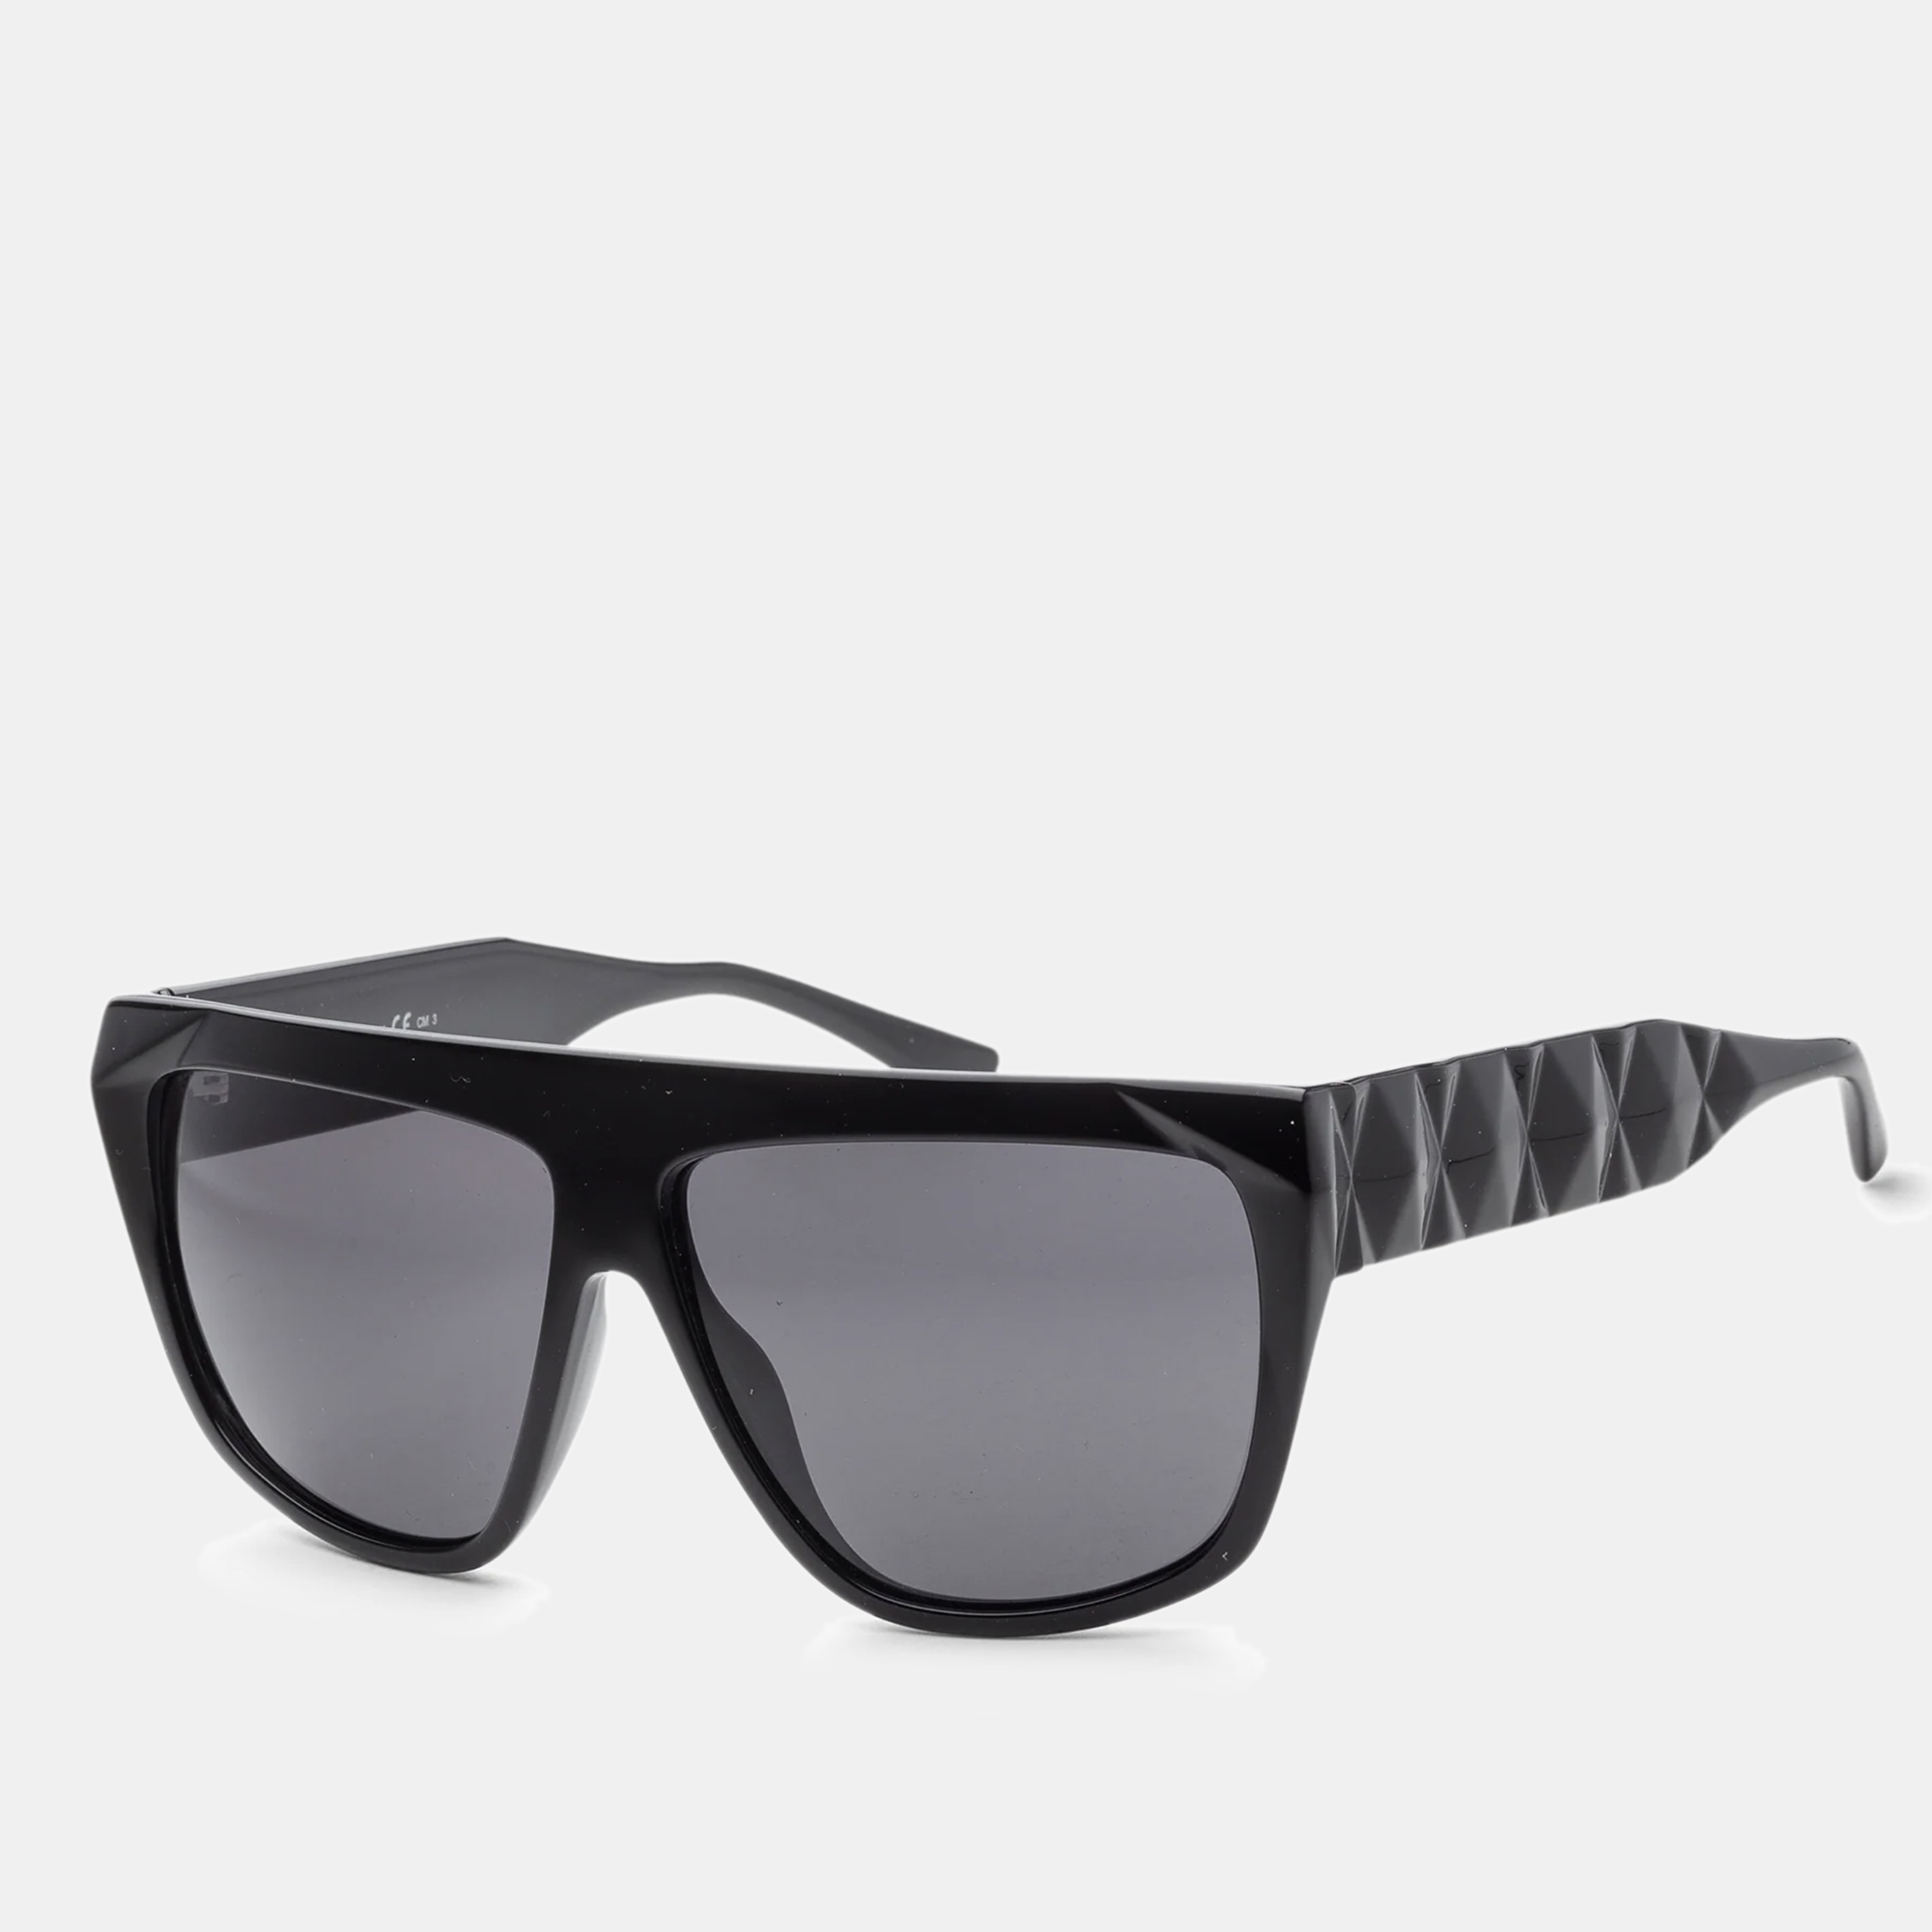 Jimmy Choo Black Duane Unisex Sunglasses 61mm